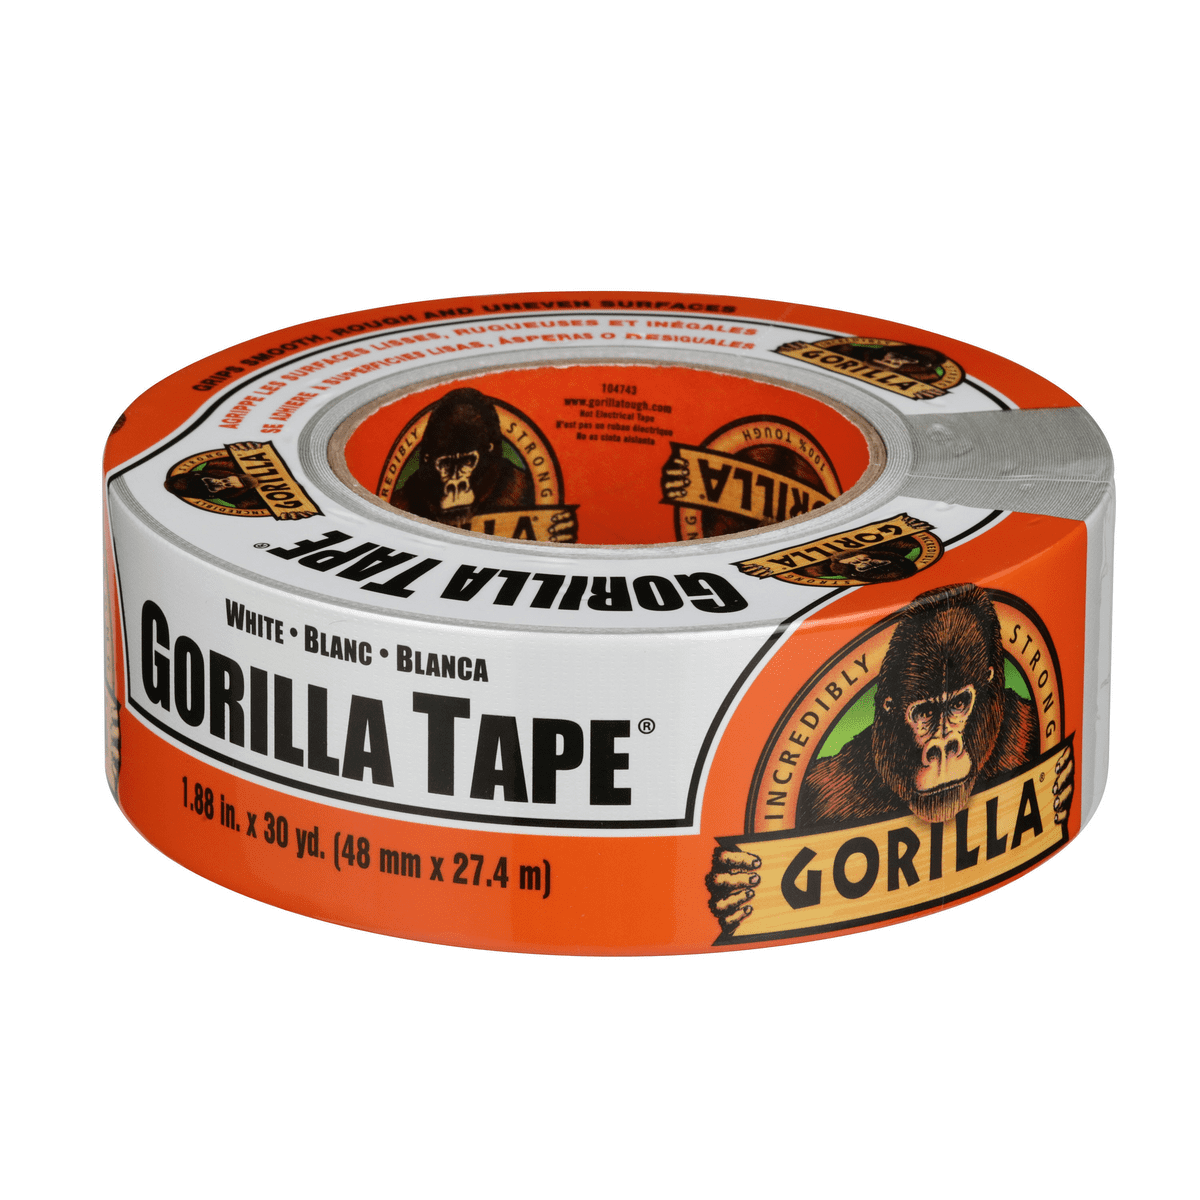 GORILLA TAPE WHITE 10M - Gorilla - Gaffer Tape, White, 48 mm x 10 m